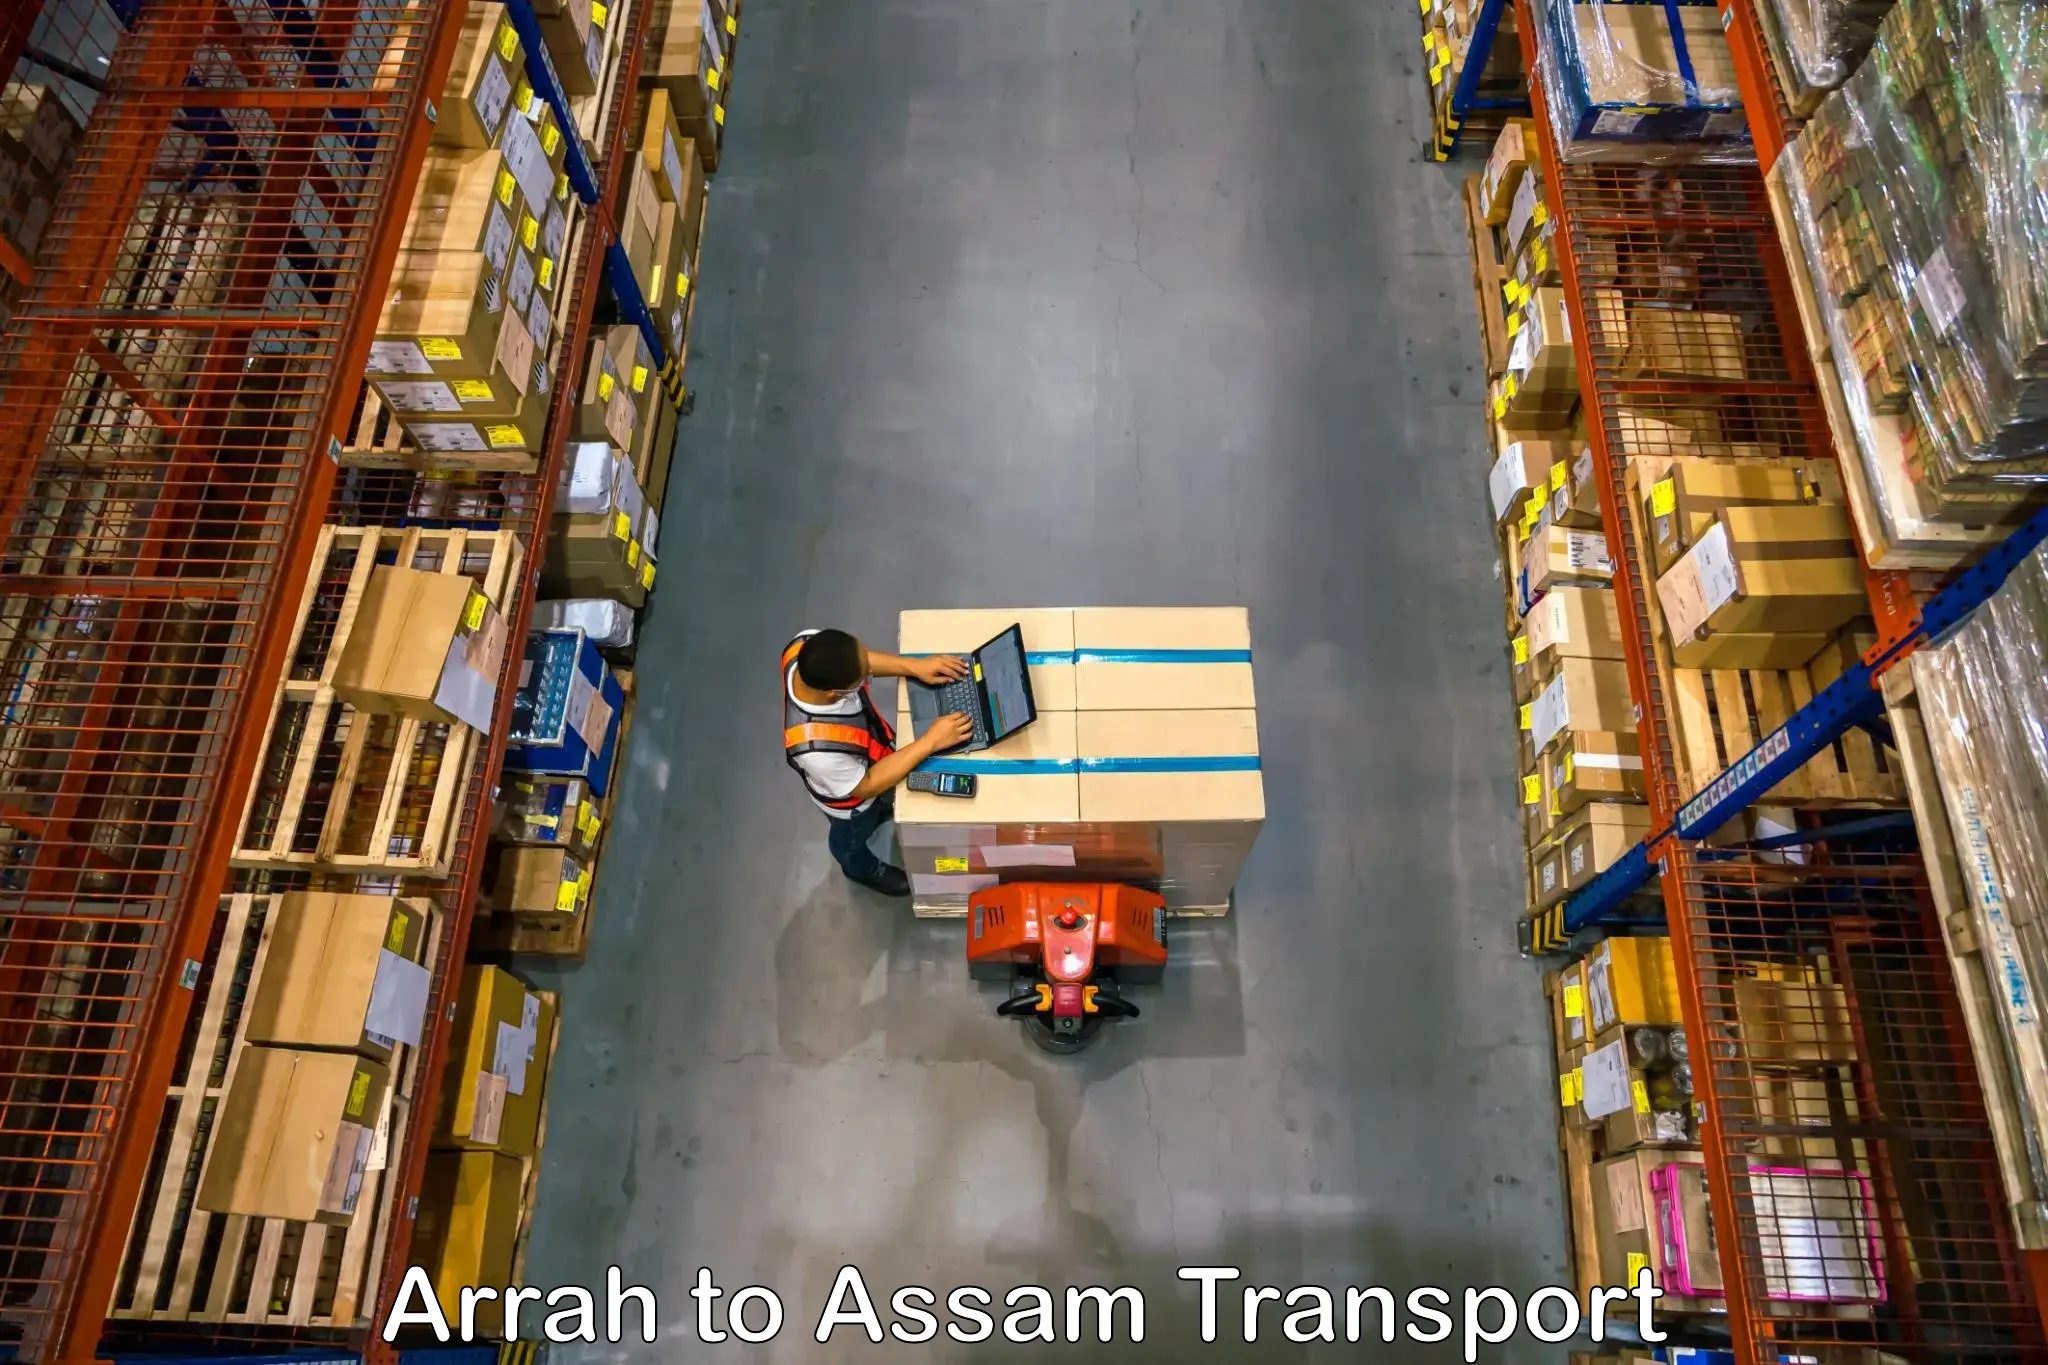 Vehicle parcel service Arrah to Lakhipur